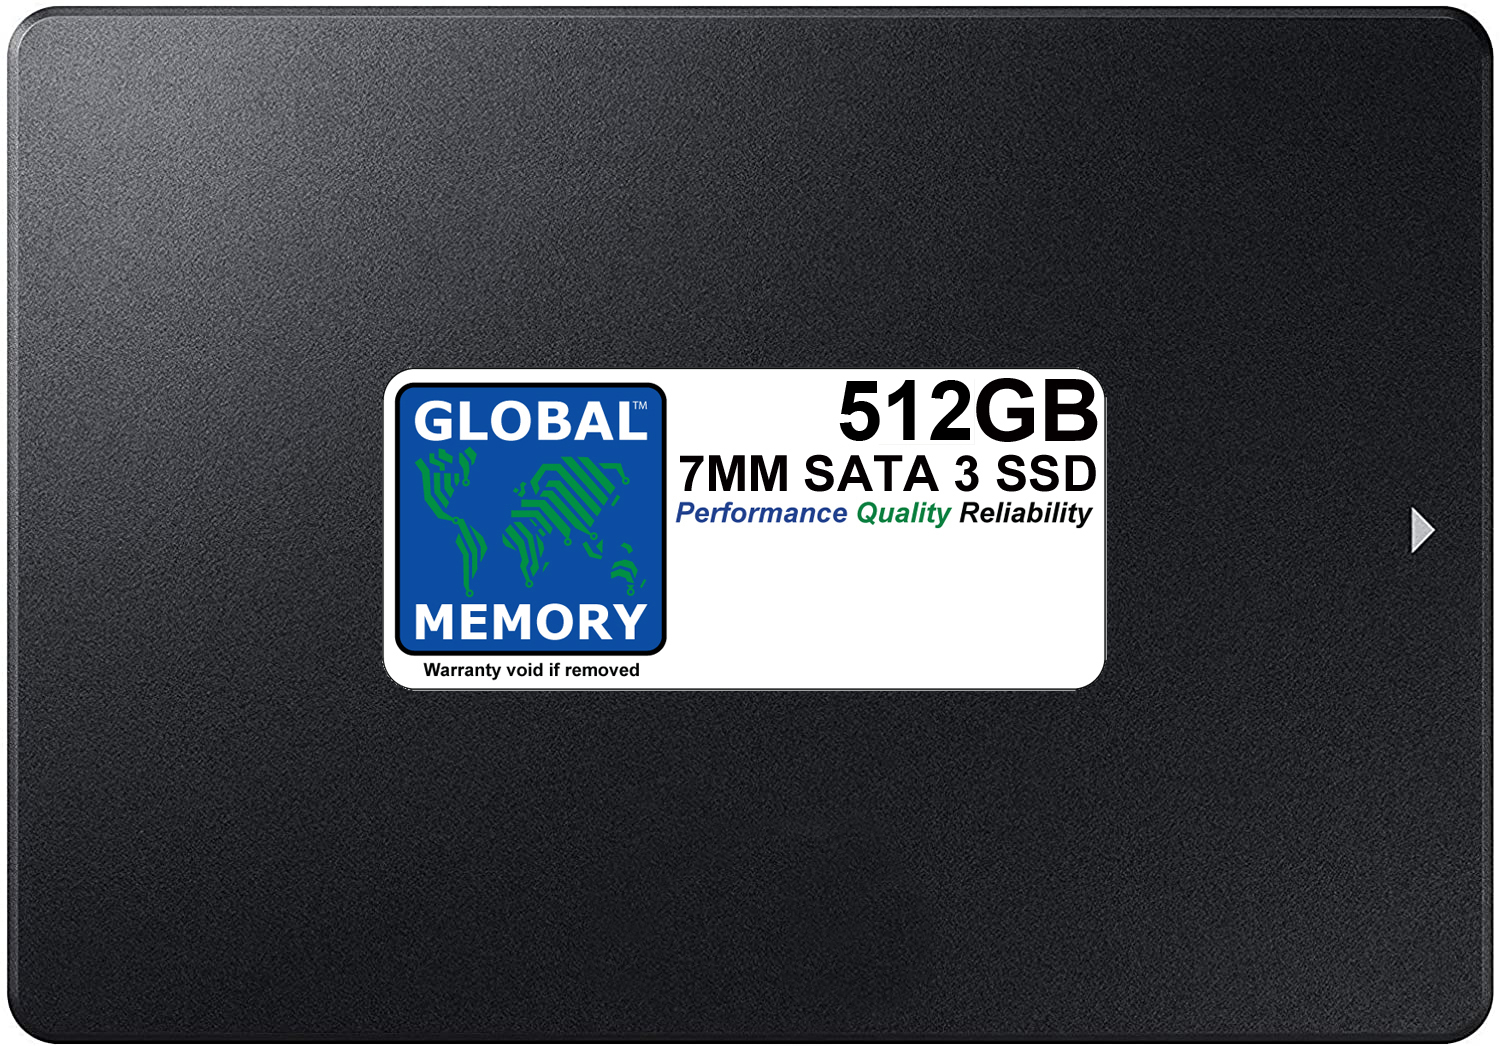 512GB 7mm 2.5" SATA 3 SSD FOR MACBOOK PRO NON RETINA (2011 - 2012)